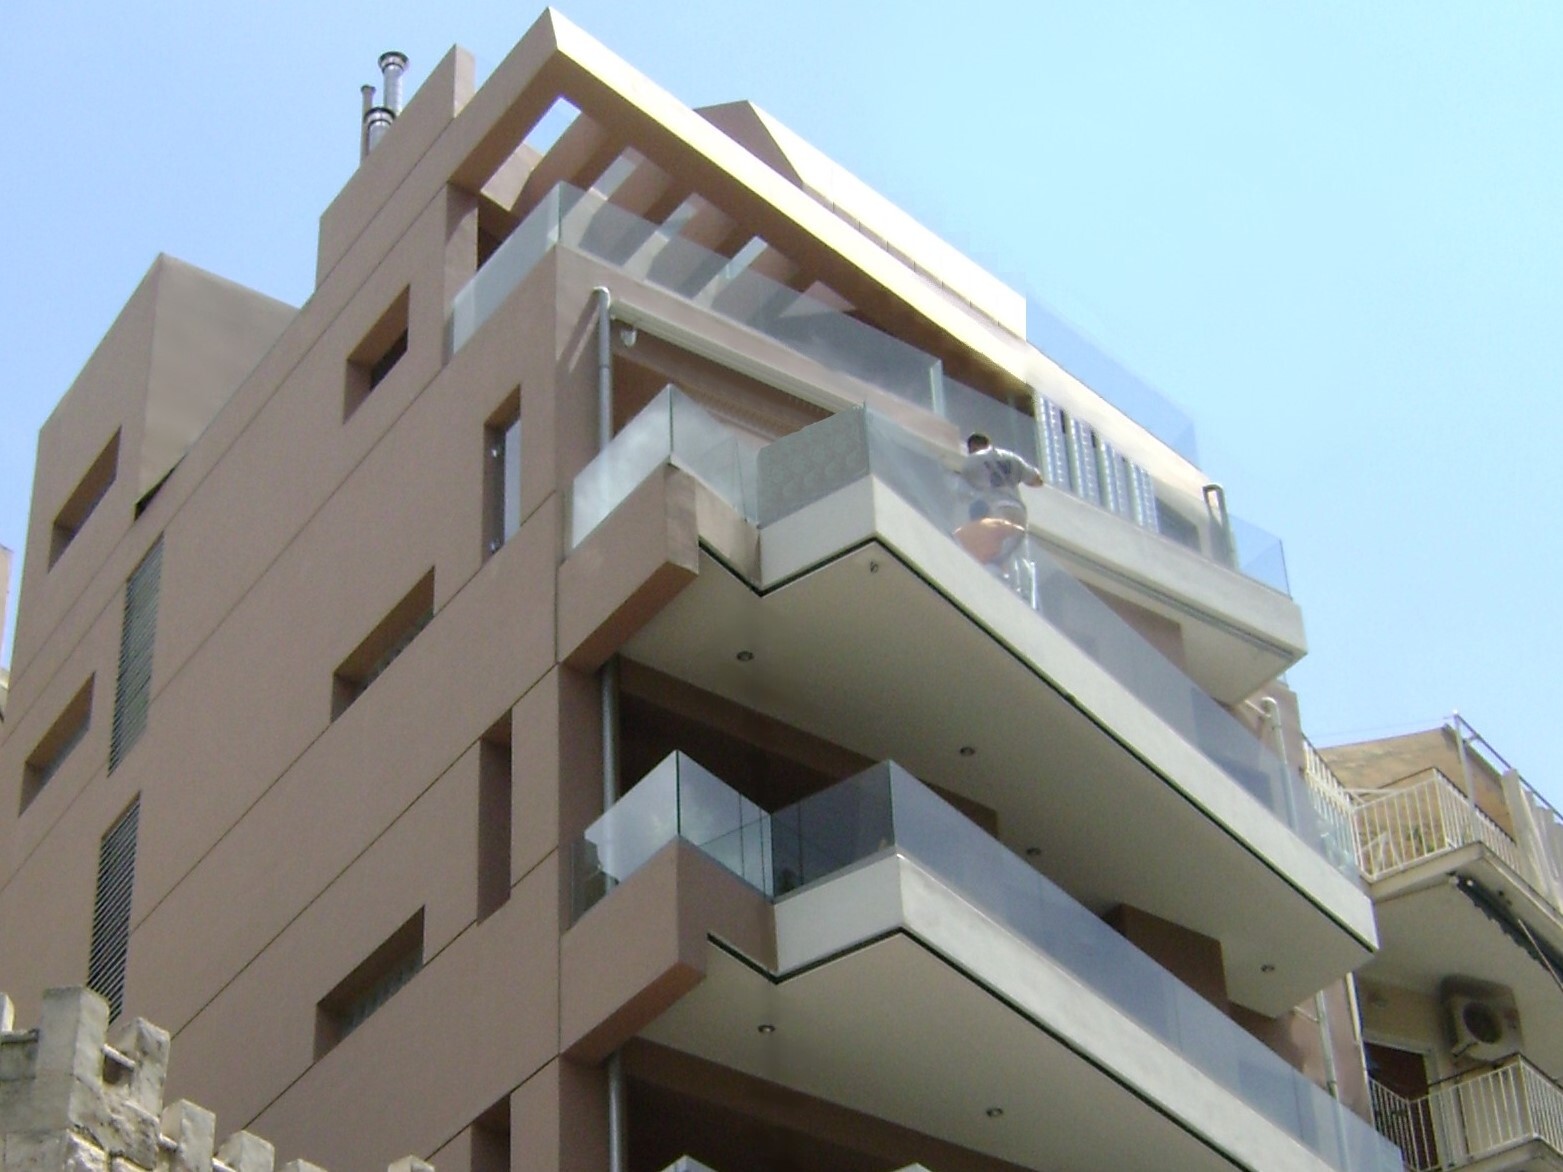 Ανακατασκευή πολυκατοικίας με καθ' ύψος προσθήκη ορόφων στο Πασαλιμάνι